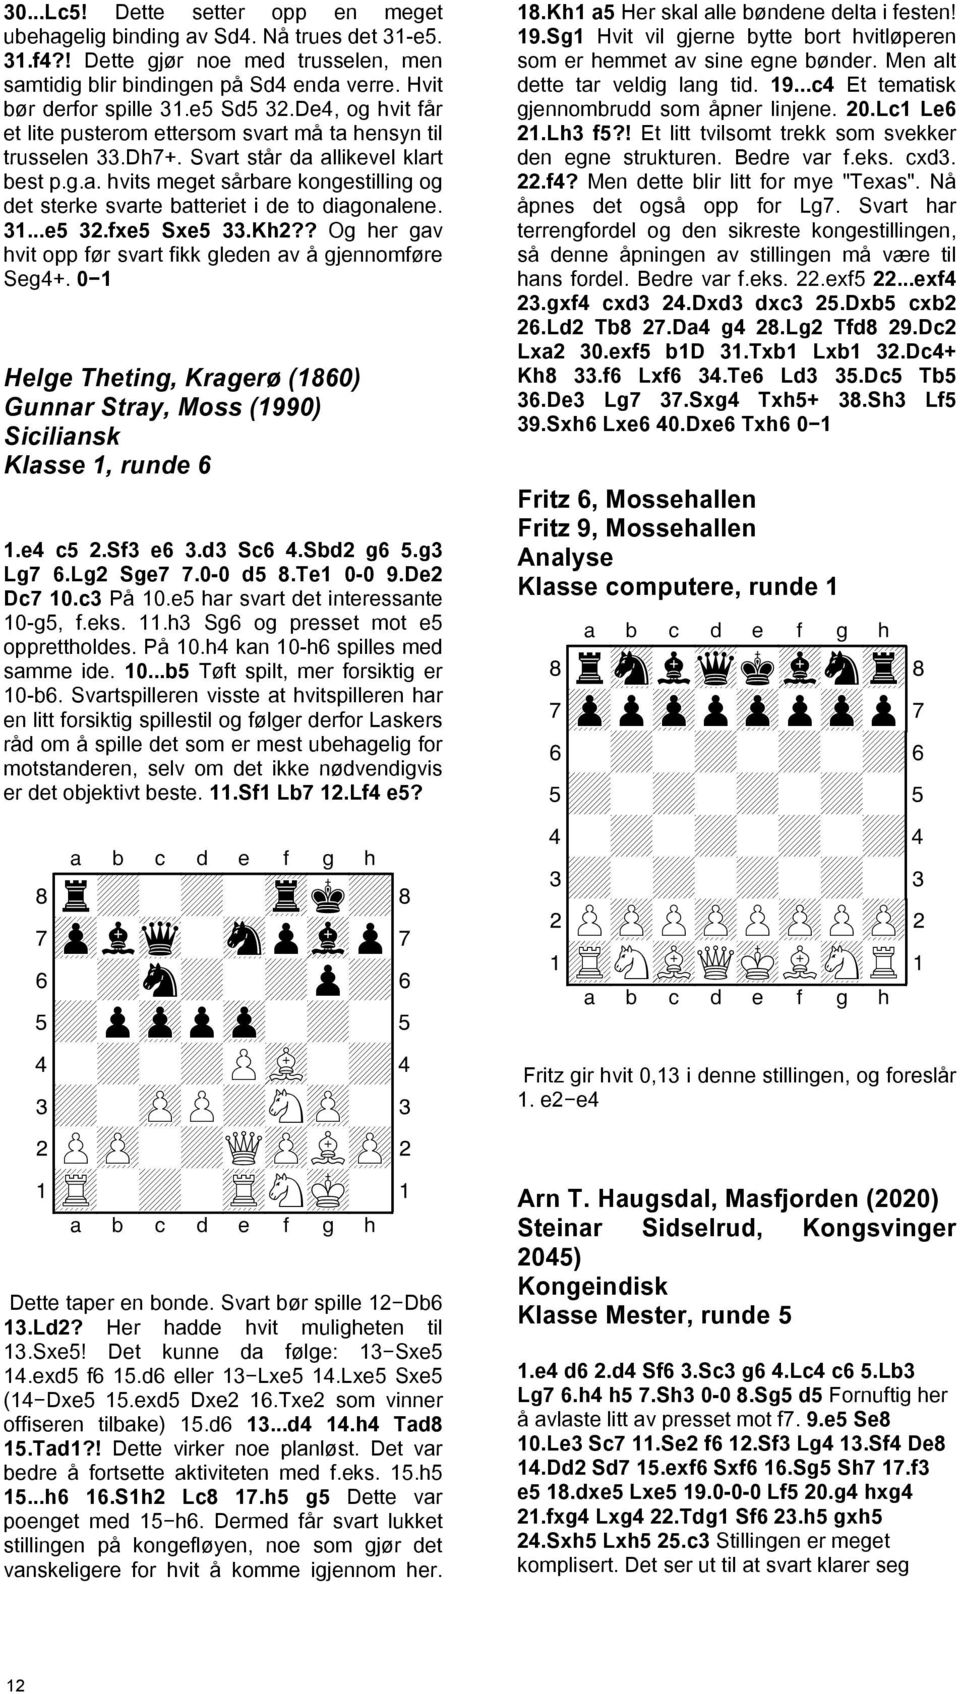 31...e5 32.fxe5 Sxe5 33.Kh2?? Og her gav hvit opp før svart fikk gleden av å gjennomføre Seg4+. 0 1 Helge Theting, Kragerø (1860) Gunnar Stray, Moss (1990) Siciliansk Klasse 1, runde 6 1.e4 c5 2.